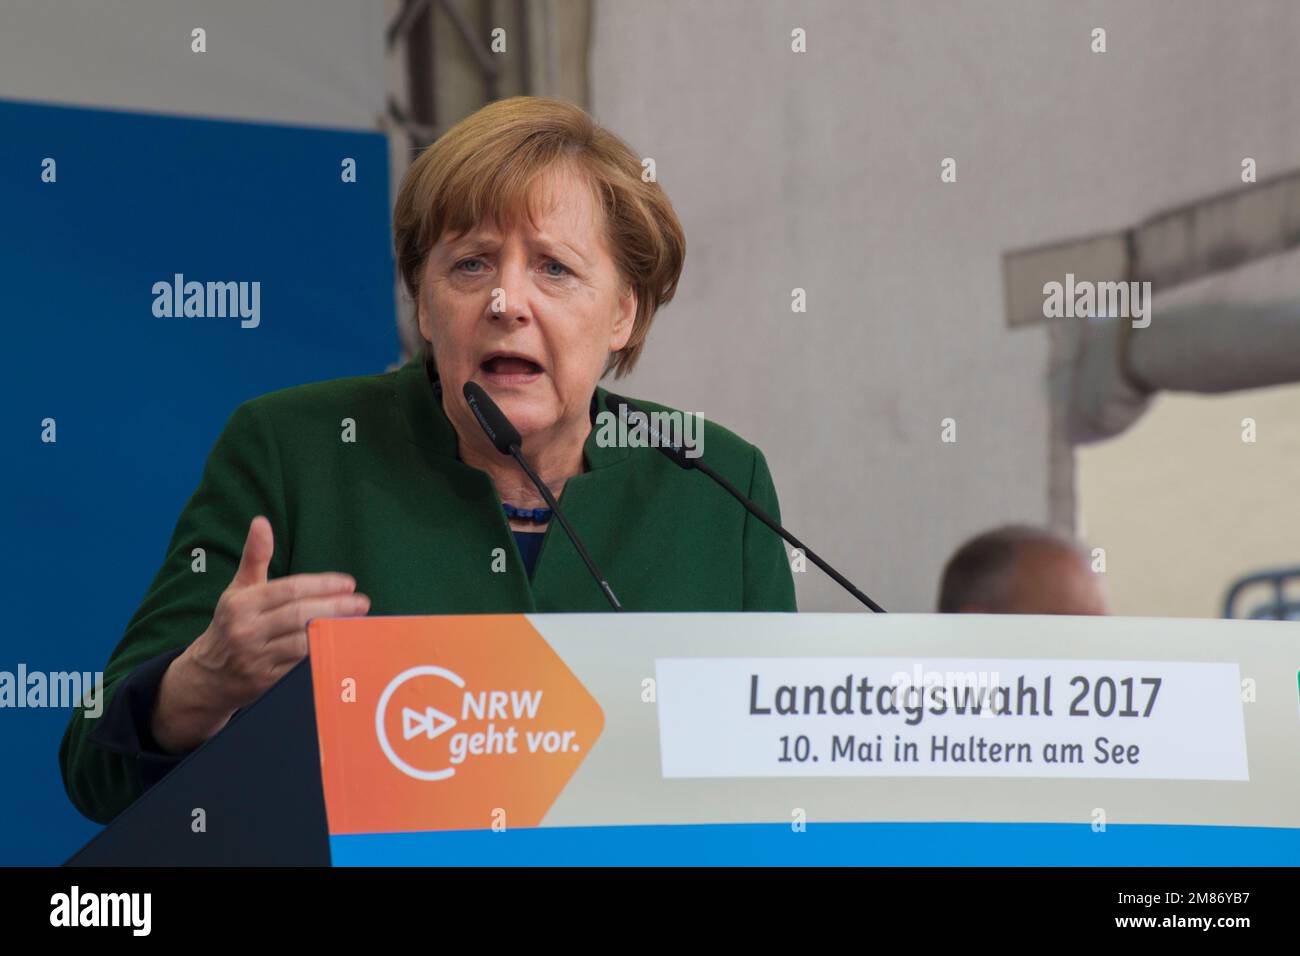 Angela Merkel était un politicien allemand et une ancienne chancelière allemande. Banque D'Images